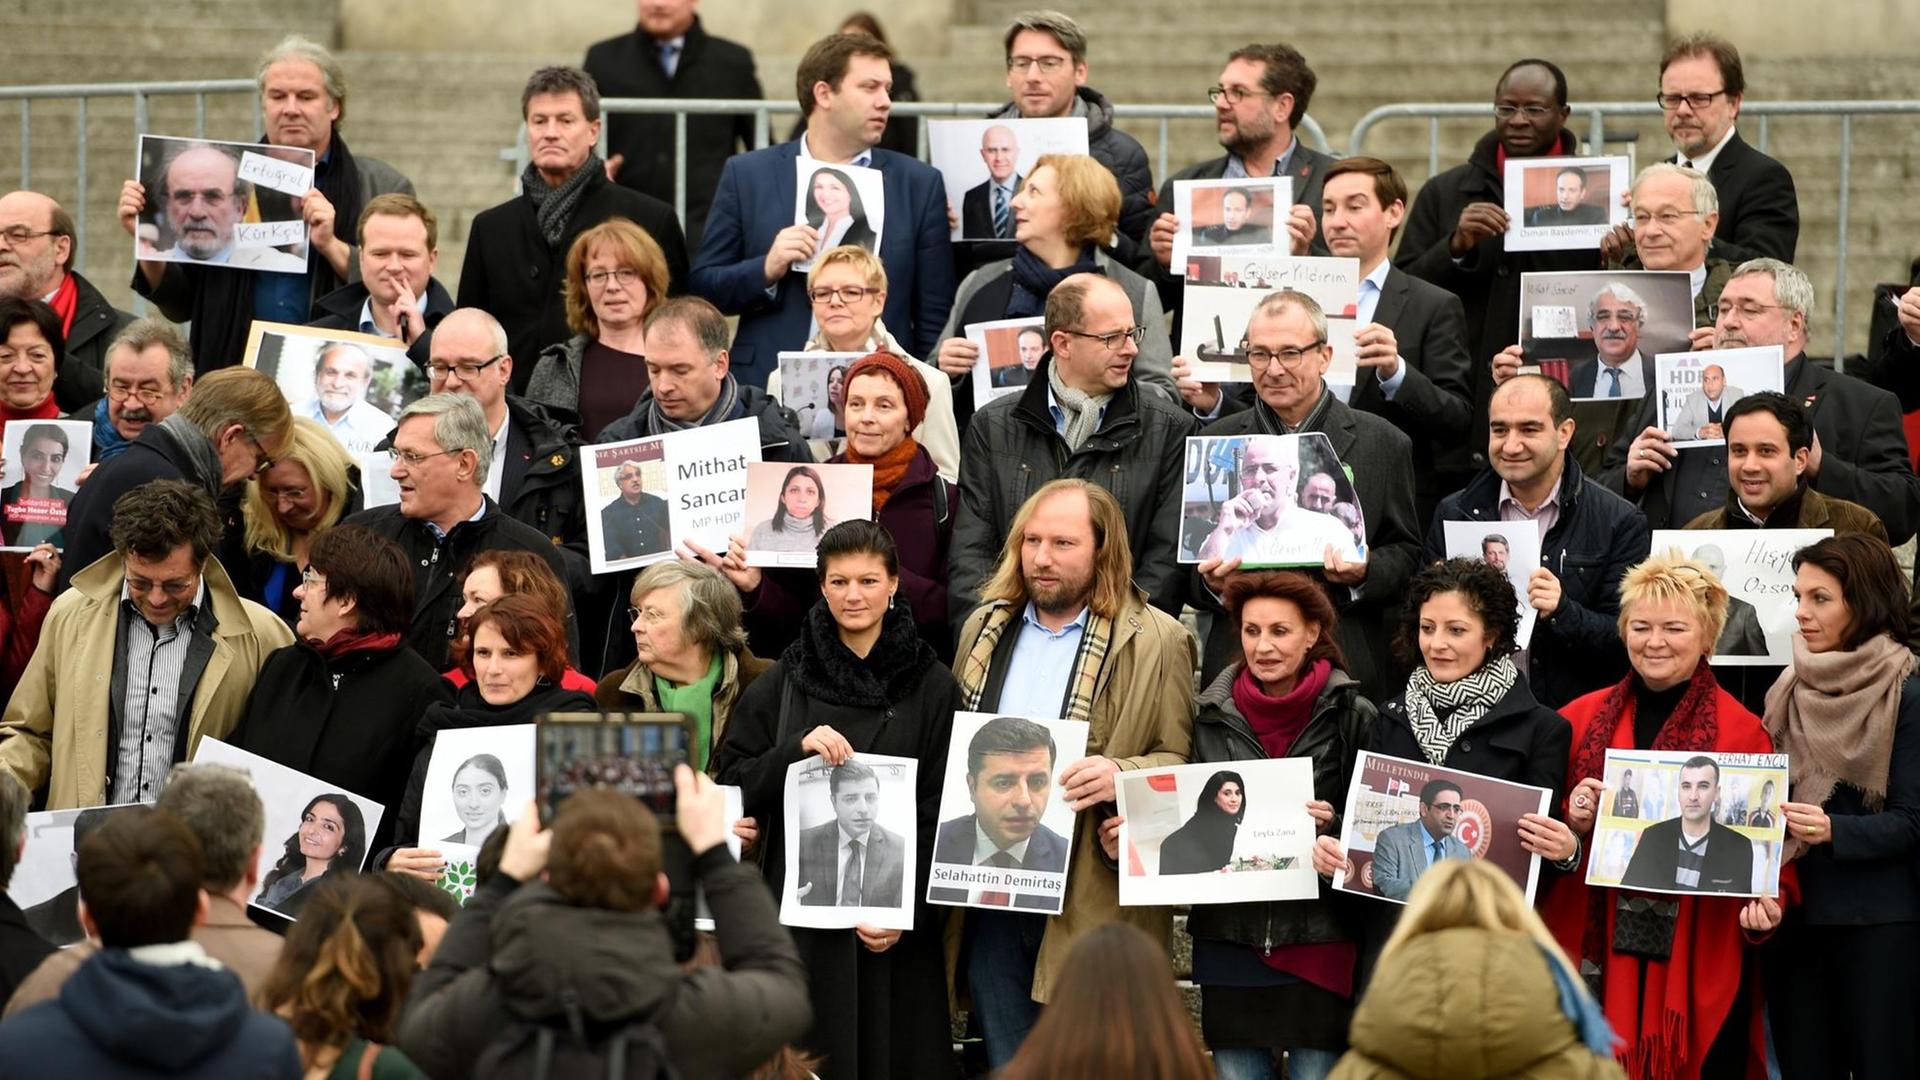 Bilder von Abgeordnete der türkischen Partei HDP werden werden am 13.12.2016 auf den Stufen des Bundestages bei einer Protestaktion von Abgeordneten des Deutschen Bundestages in Berlin gehalten. Die Politiker wollten mit der Aktion Solidarität mit der verfolgten HDP bekunden.